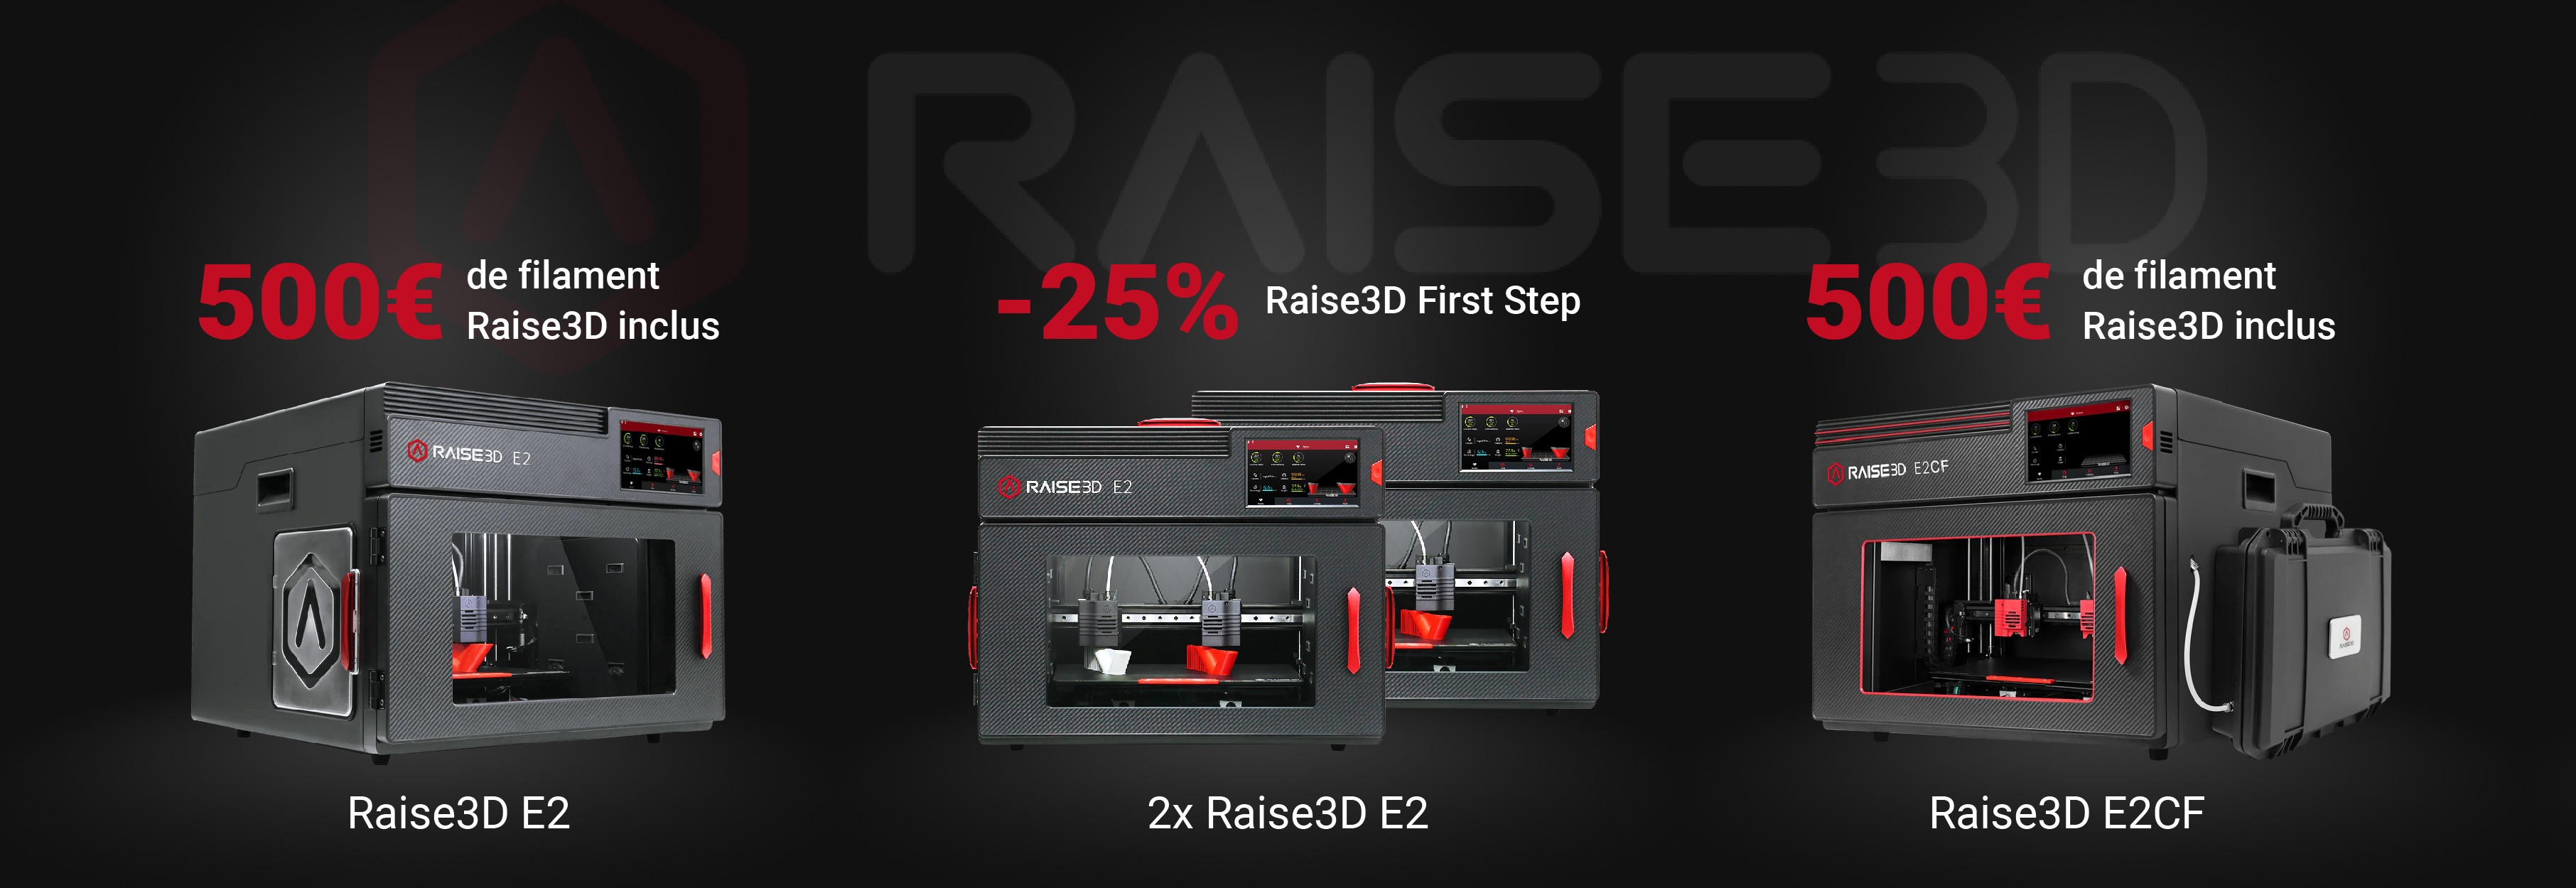 Offre Raise3D E2 & E2CF